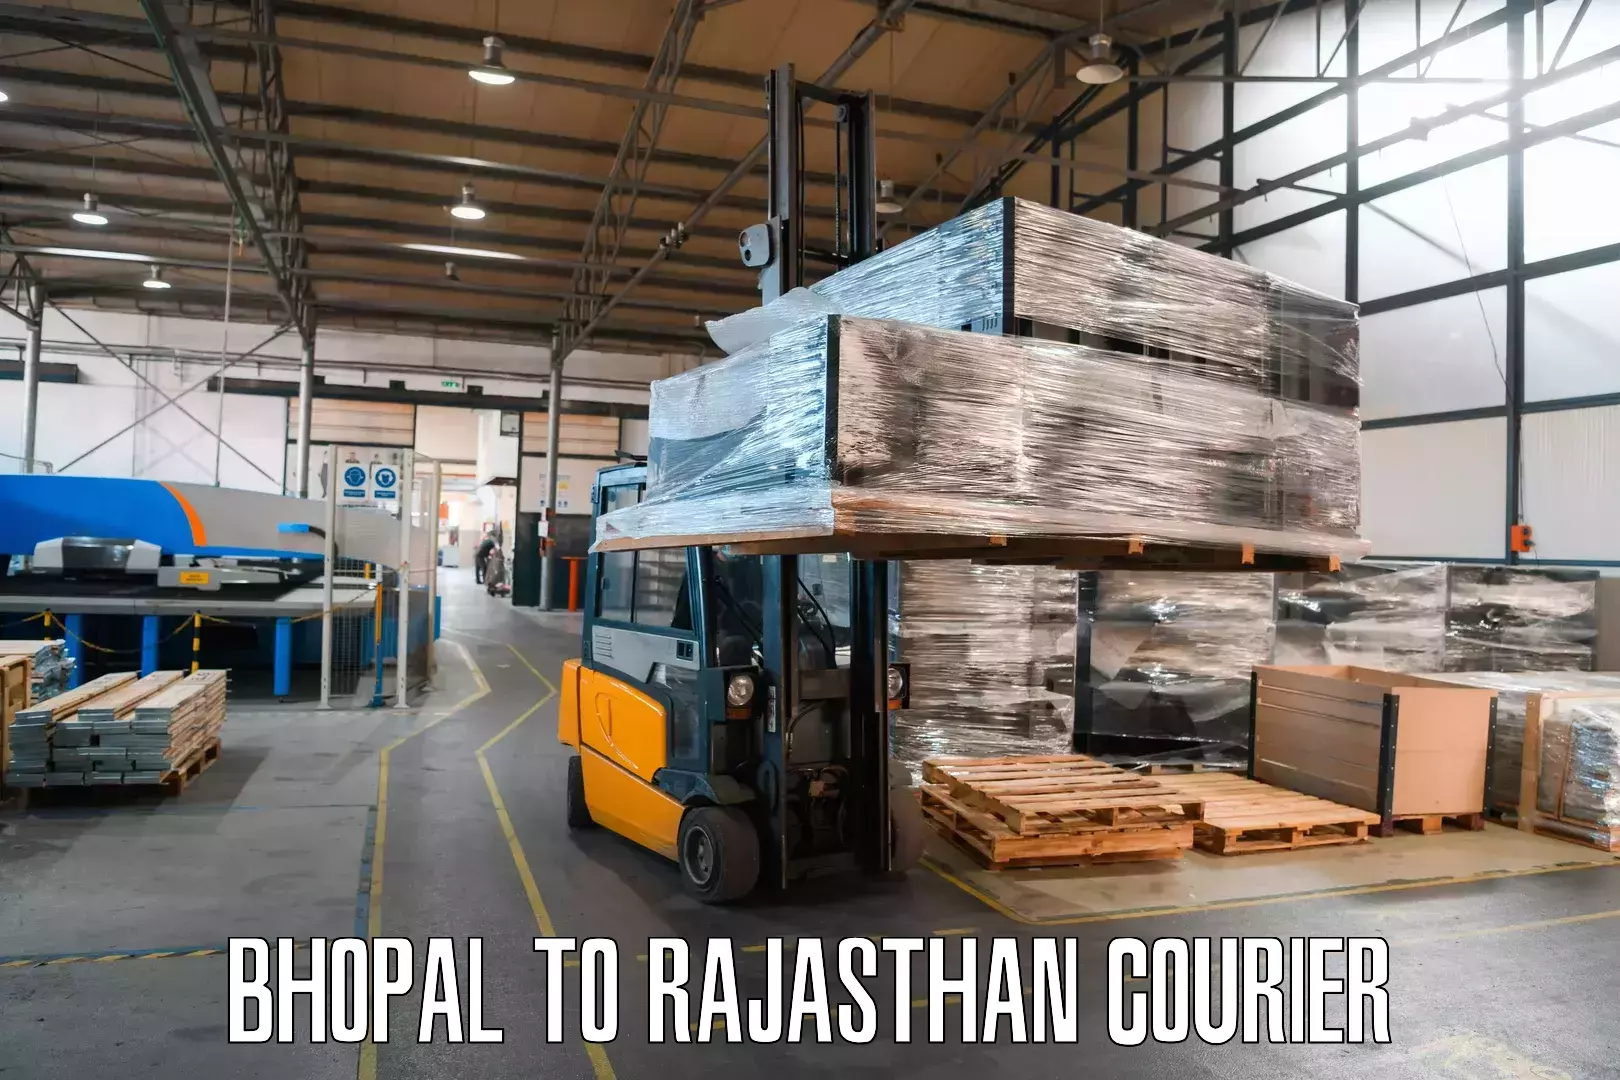 Global logistics network Bhopal to Renwal